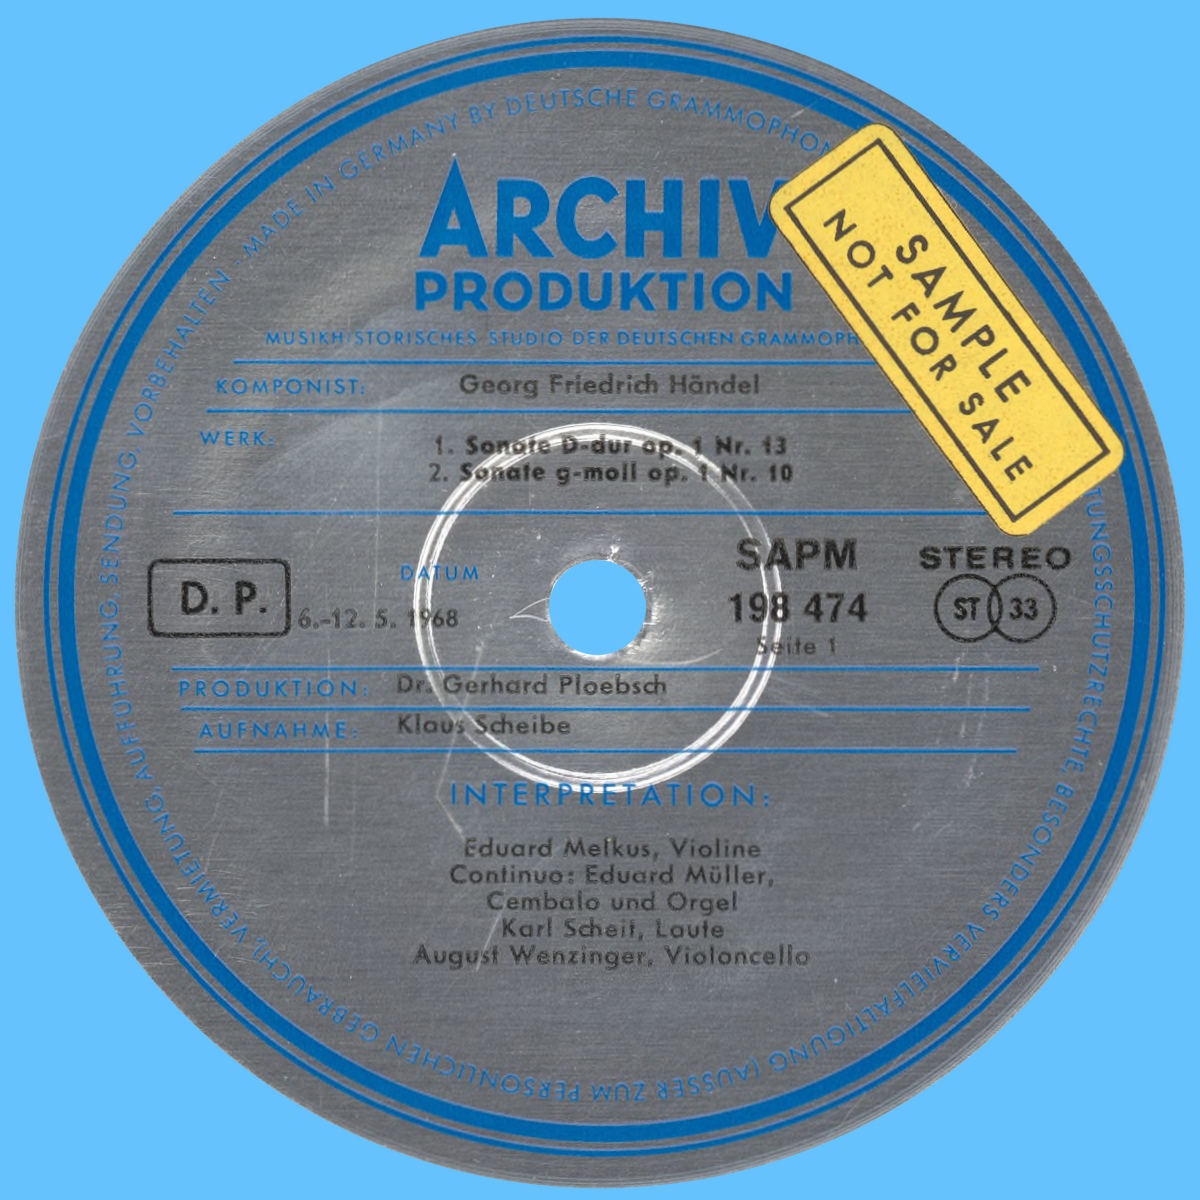 Étiquette recto du premier disque de l'album Archiv Produktion SAPM 198 474/75